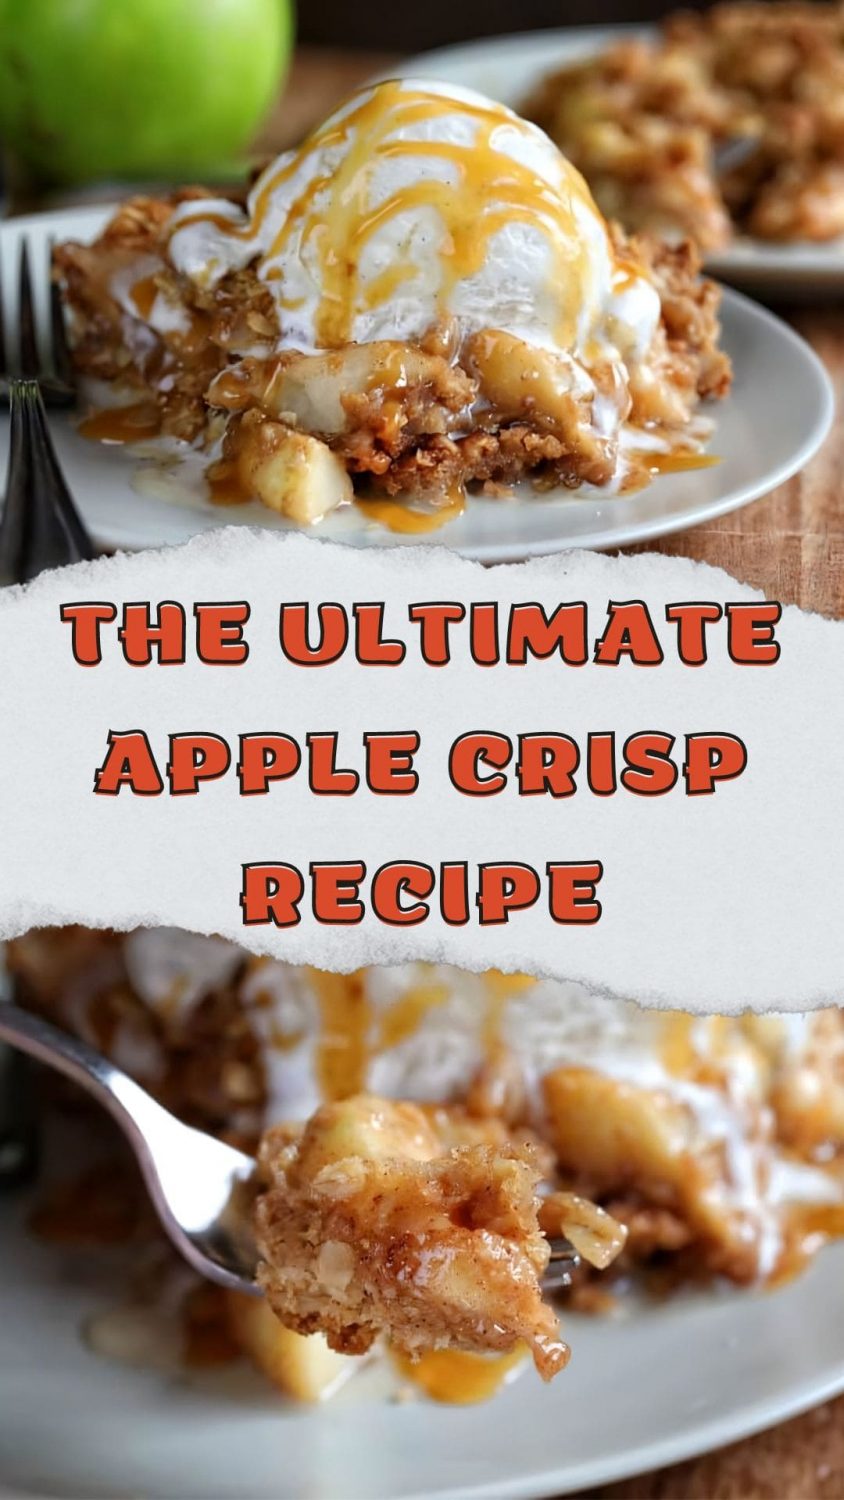 The Ultimate Apple Crisp Recipe